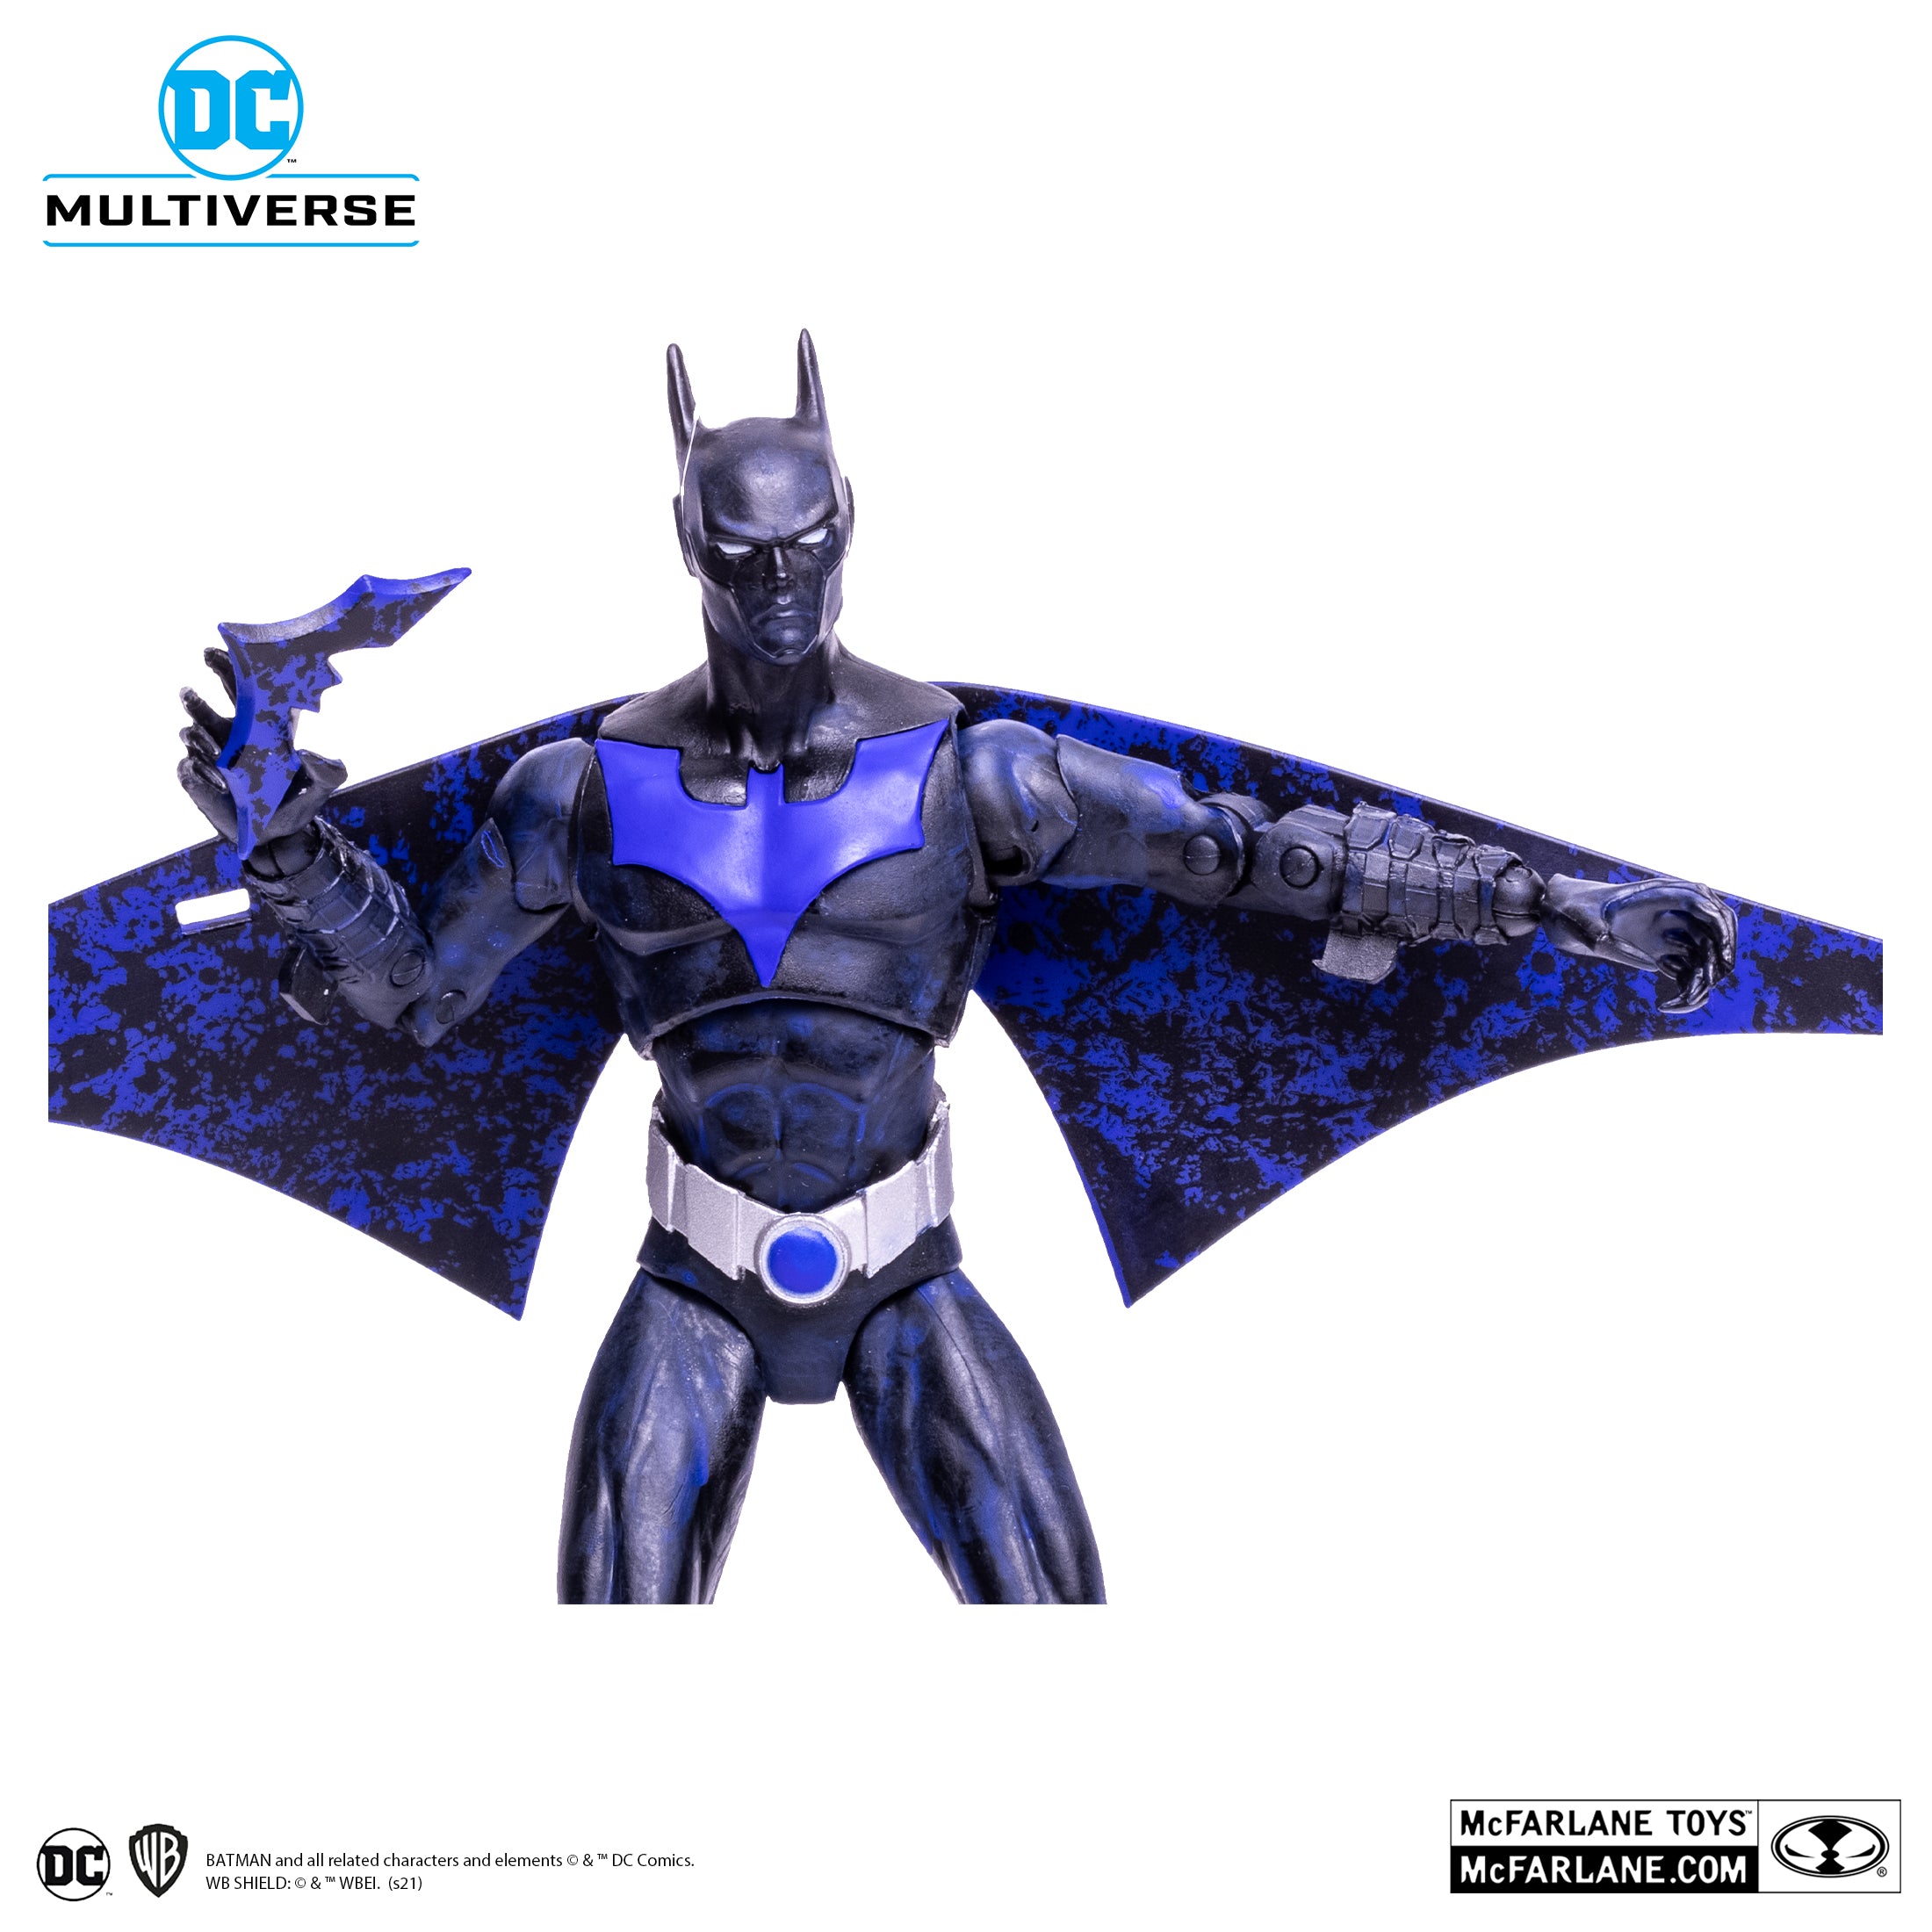 DC Multiverse - McFarlane Toys -  Batman Beyond - Inque as Batman Beyond